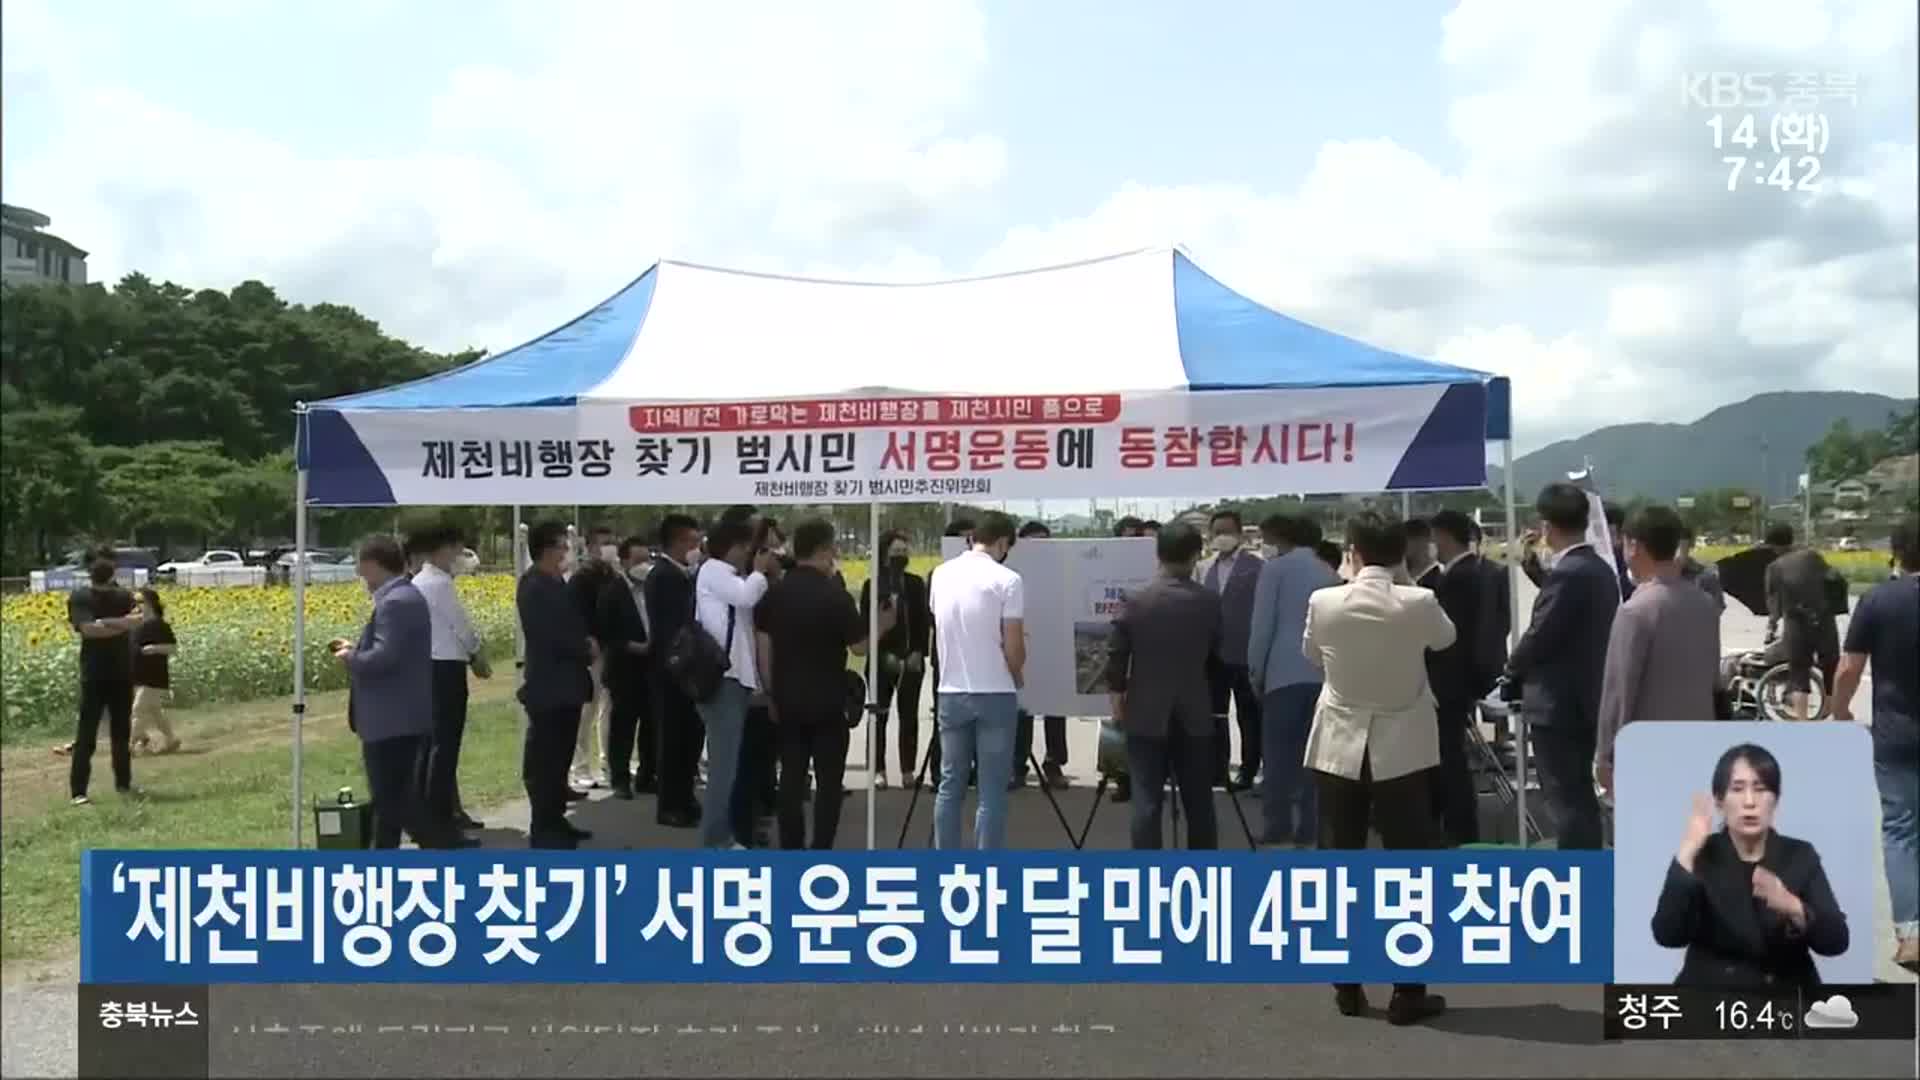 ‘제천비행장 찾기’ 서명 운동 한 달 만에 4만 명 참여